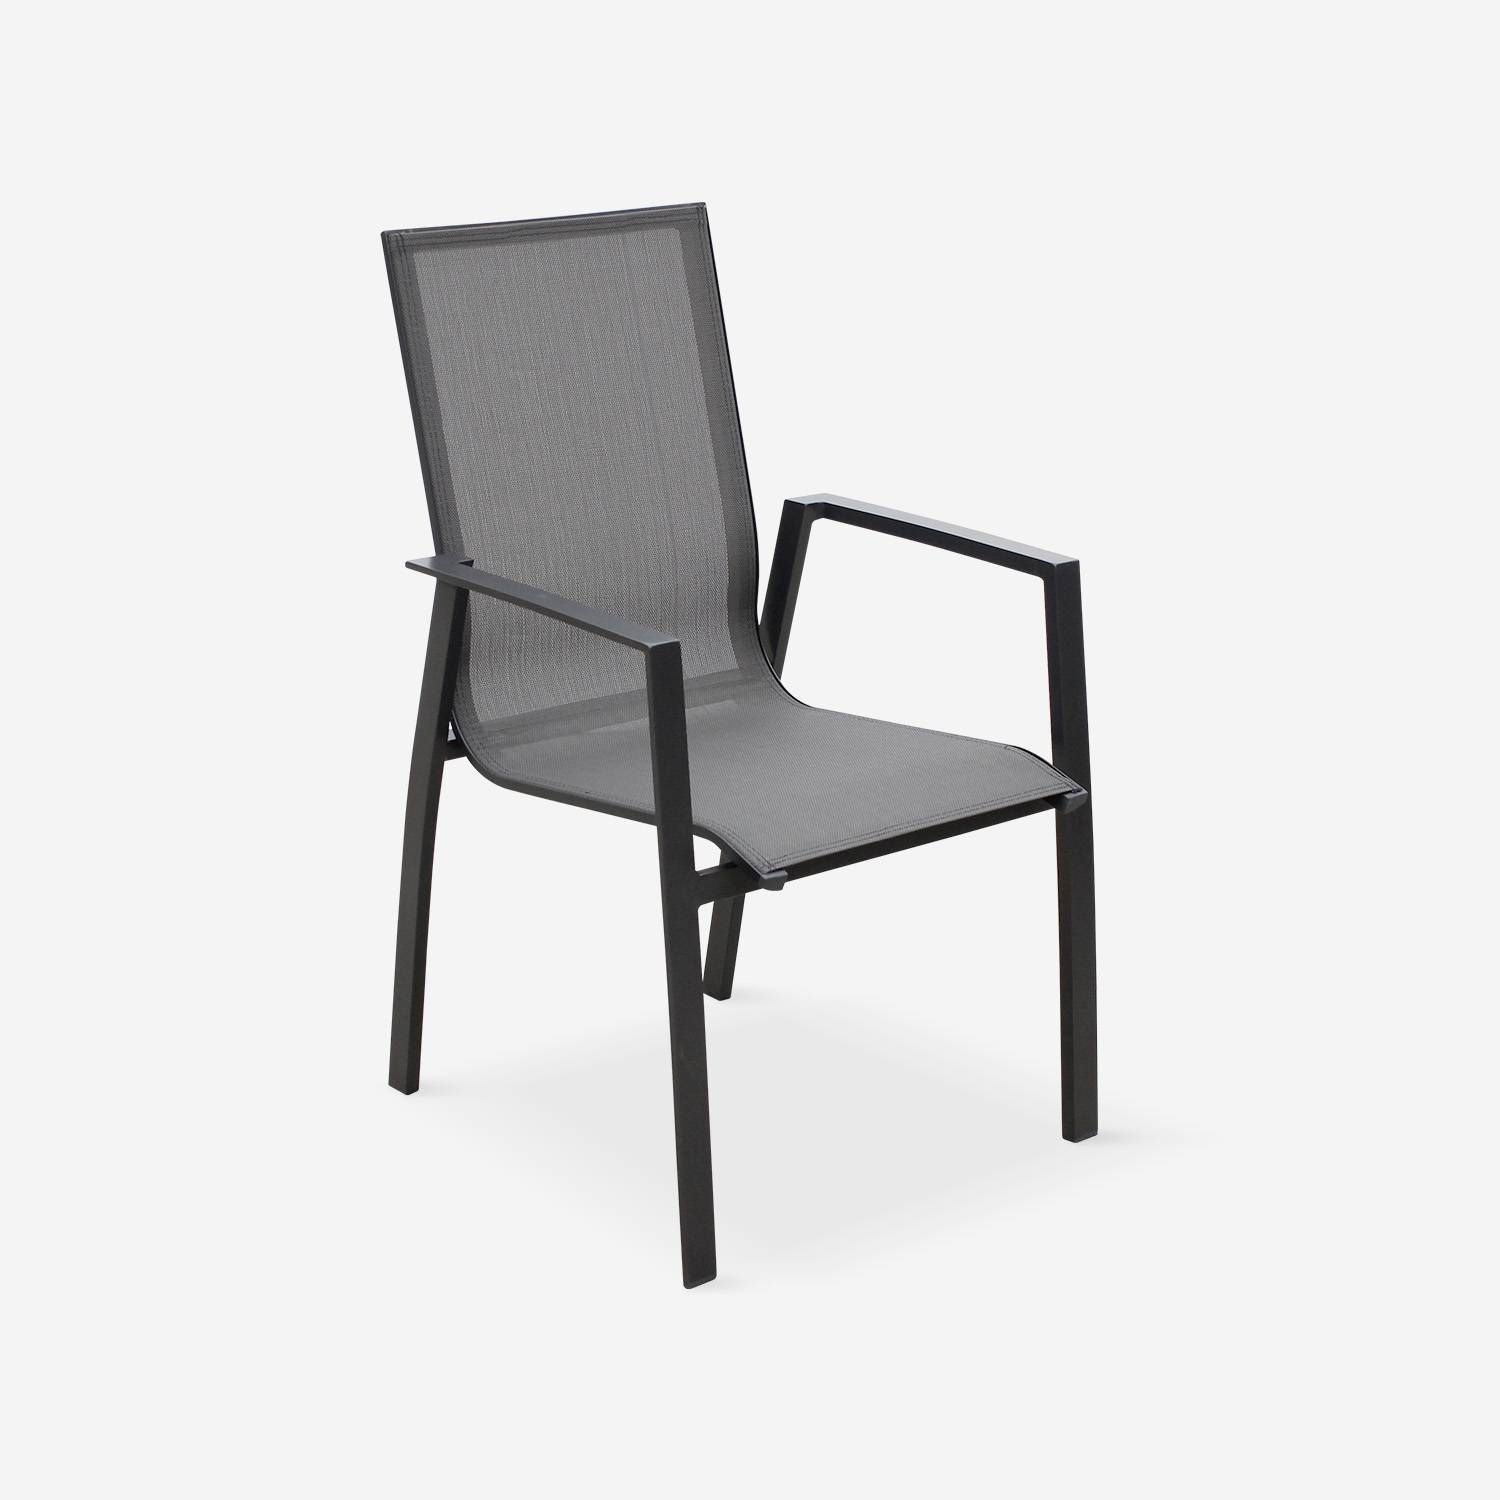 Coppia di sedie Washington Antracite/ Grigio scuro in alluminio antracite e textilene colore grigio scuro, impilabili,sweeek,Photo2